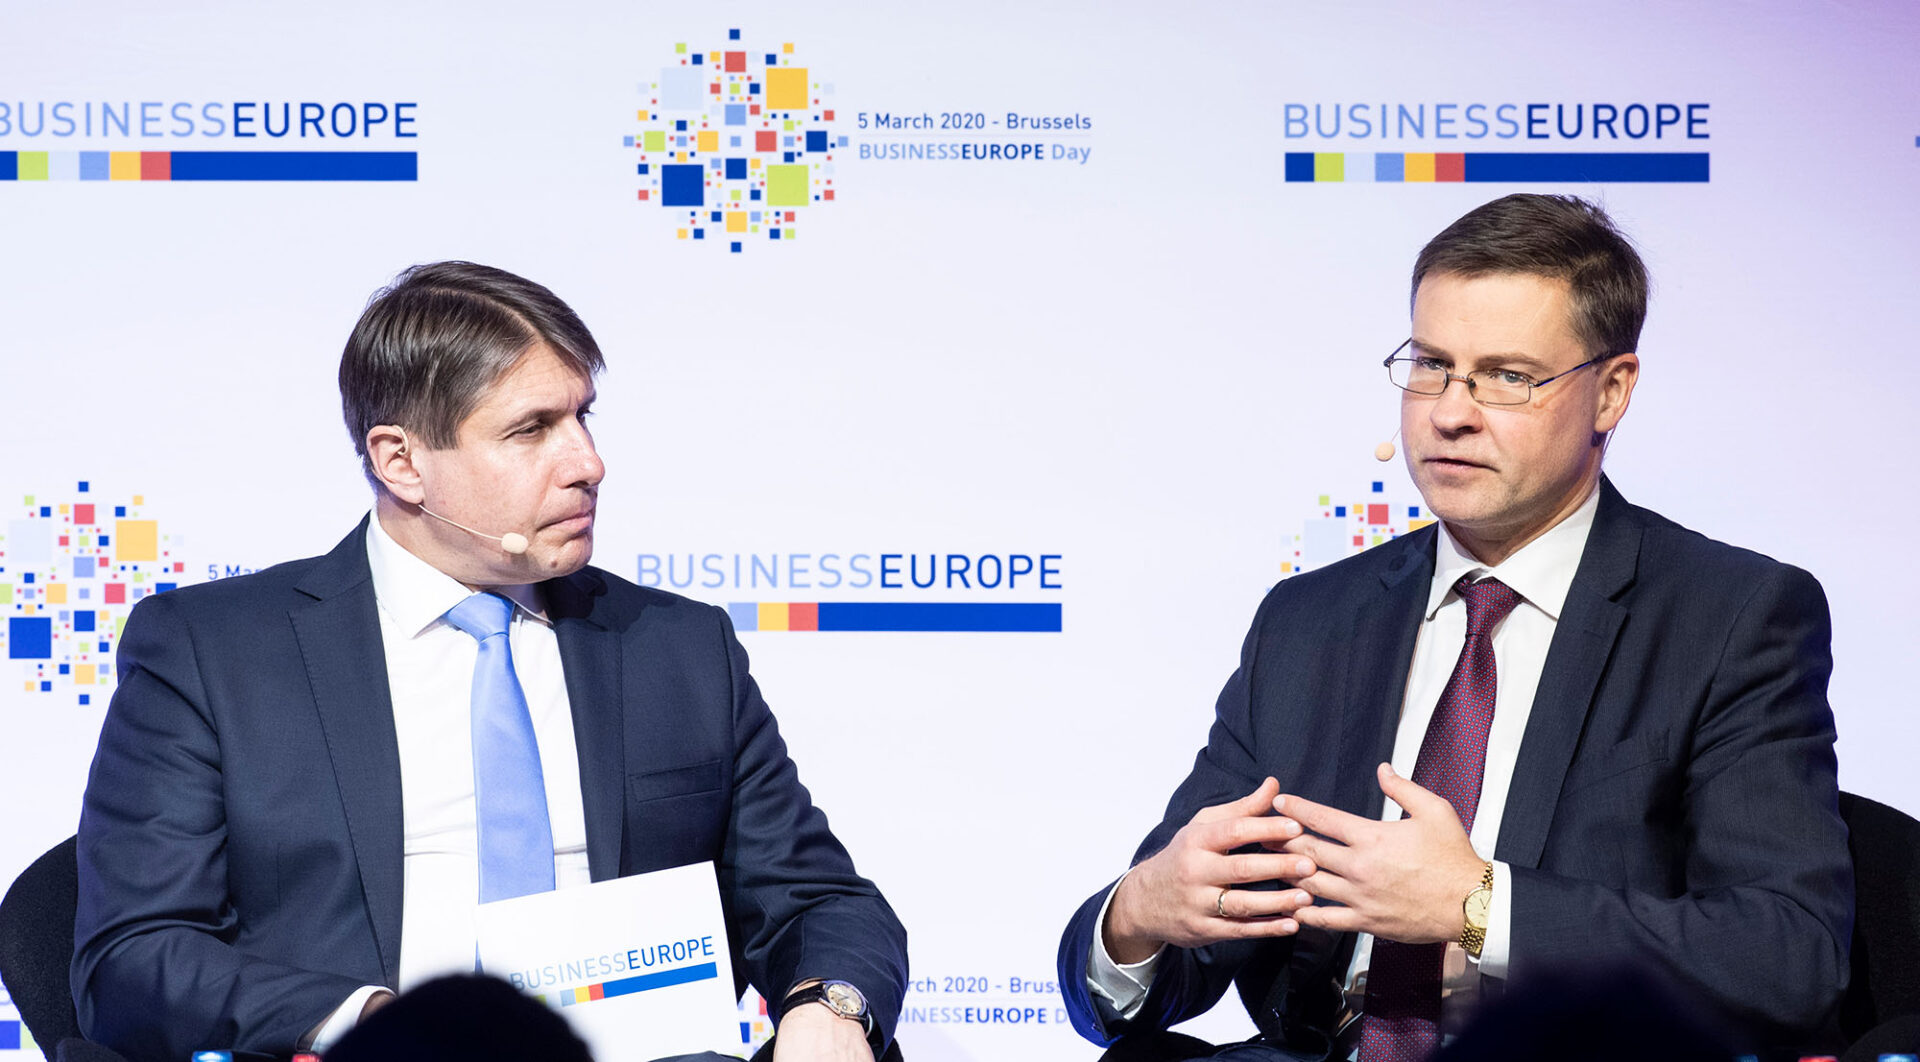 Oświadczenie BusinessEurope w sprawie inwazji Rosji na Ukrainę